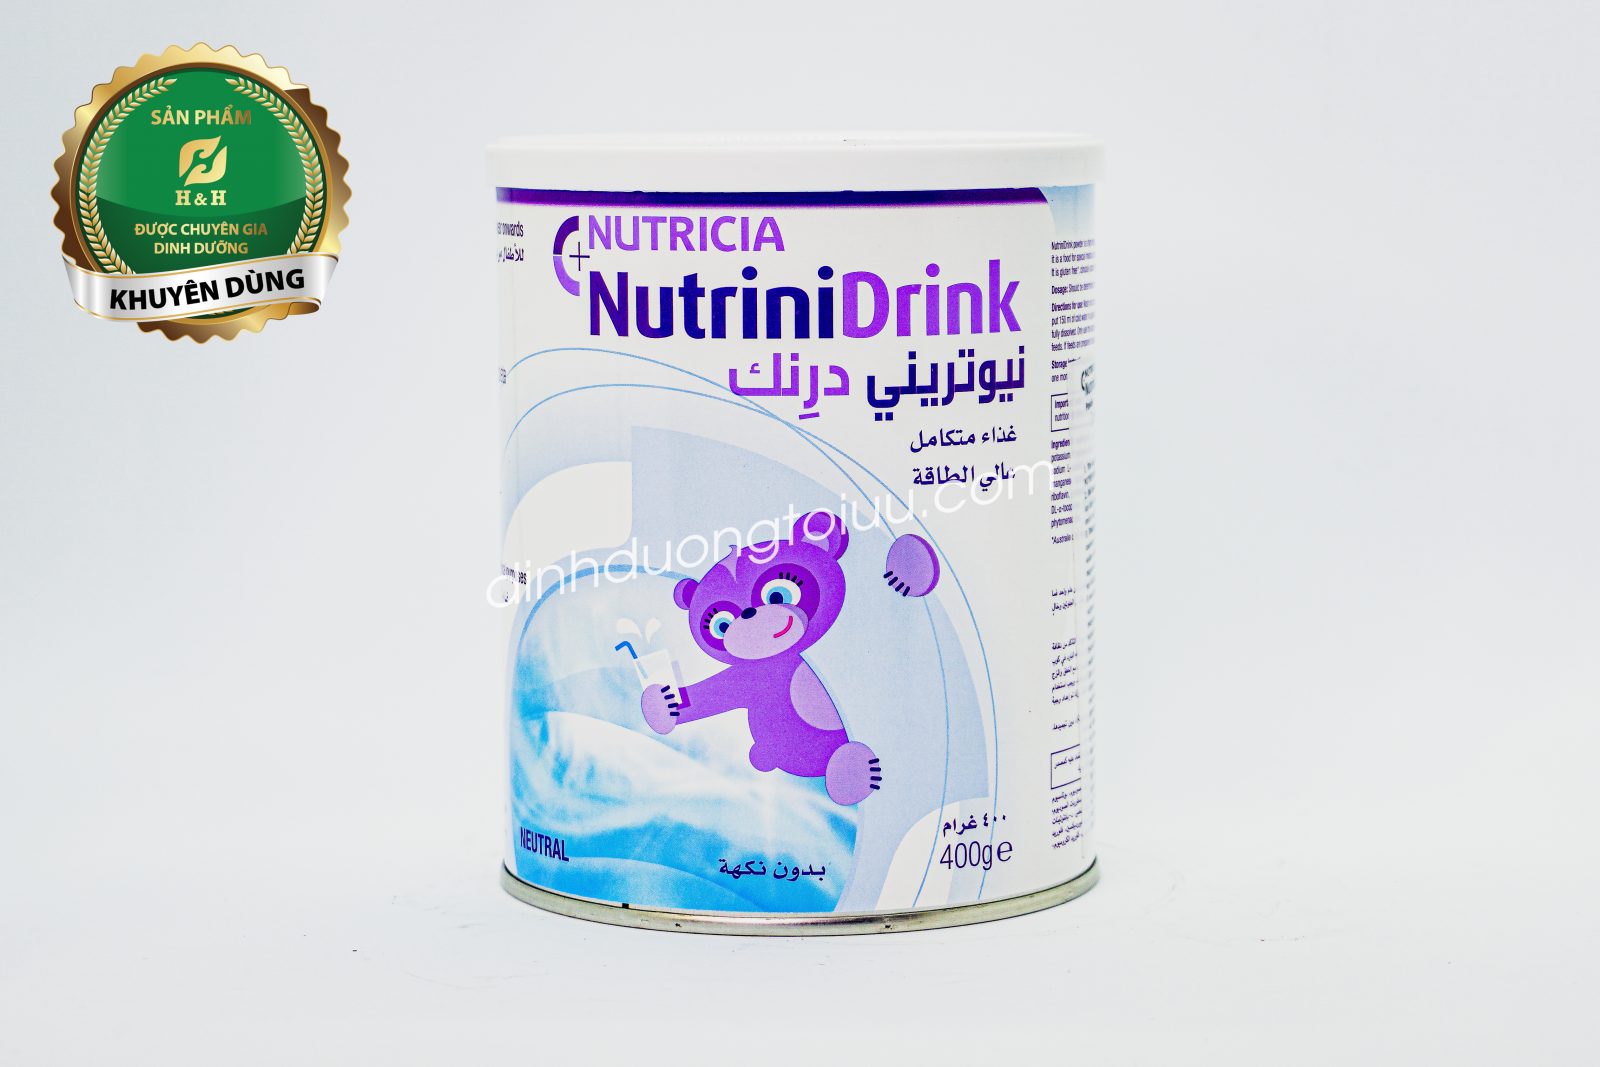 Sữa NutriniDrink Powder Neutral 400g - Dinh dưỡng cho trẻ biếng ăn bắt kịp đà tăng trưởng